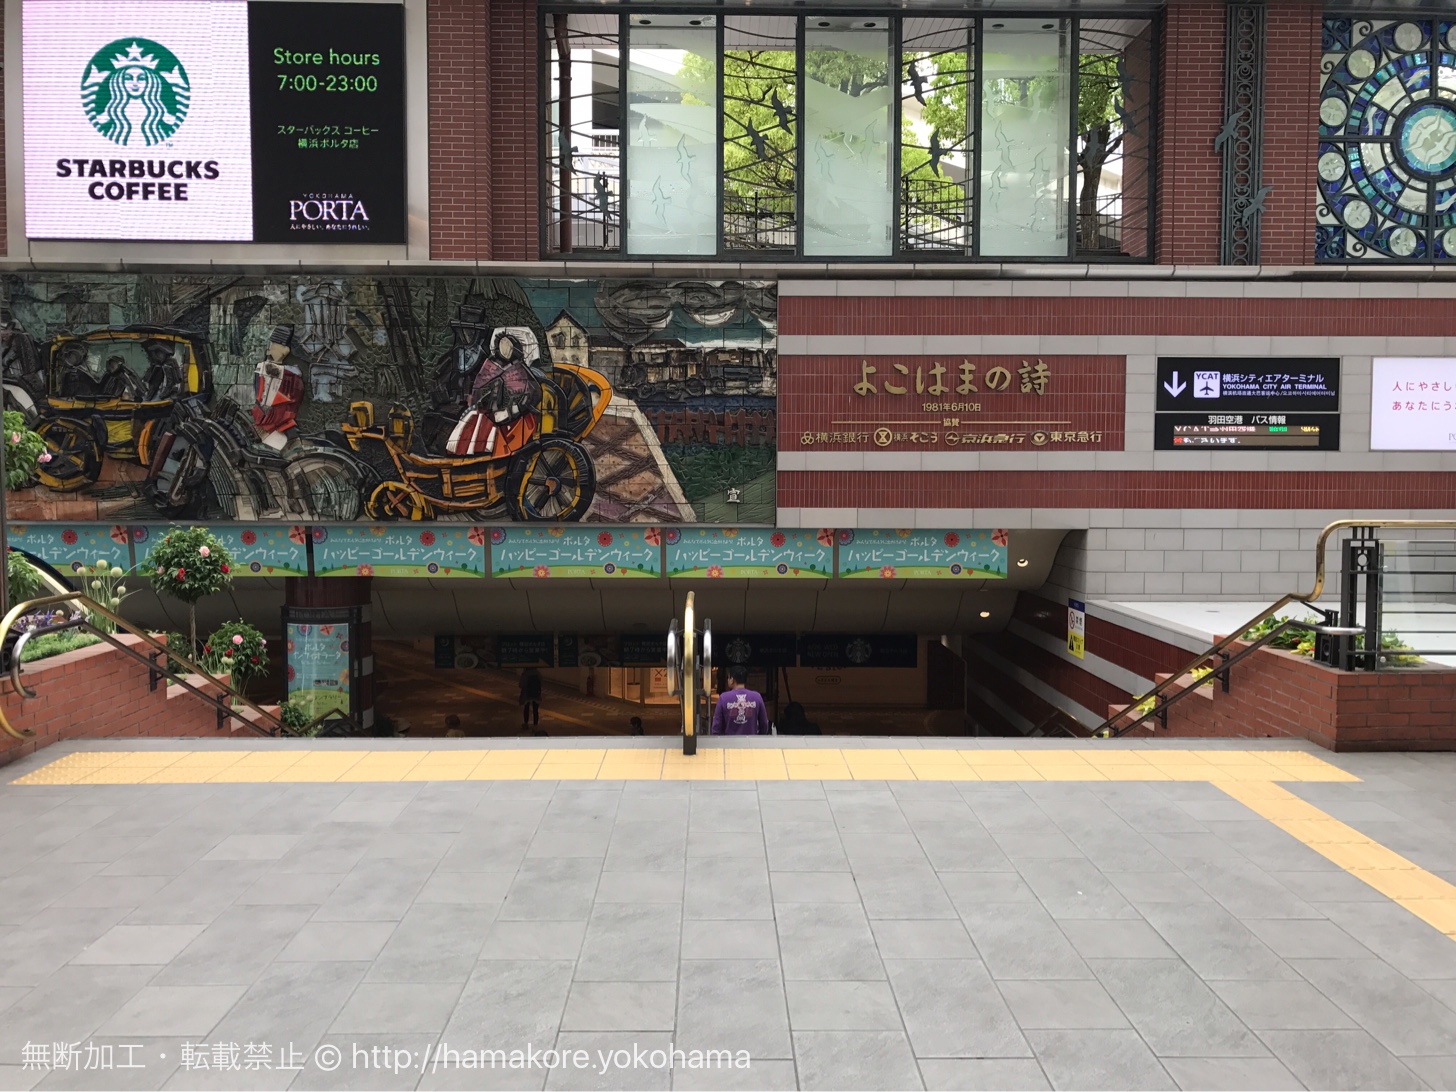 横浜駅 中央通路からポルタに続く階段